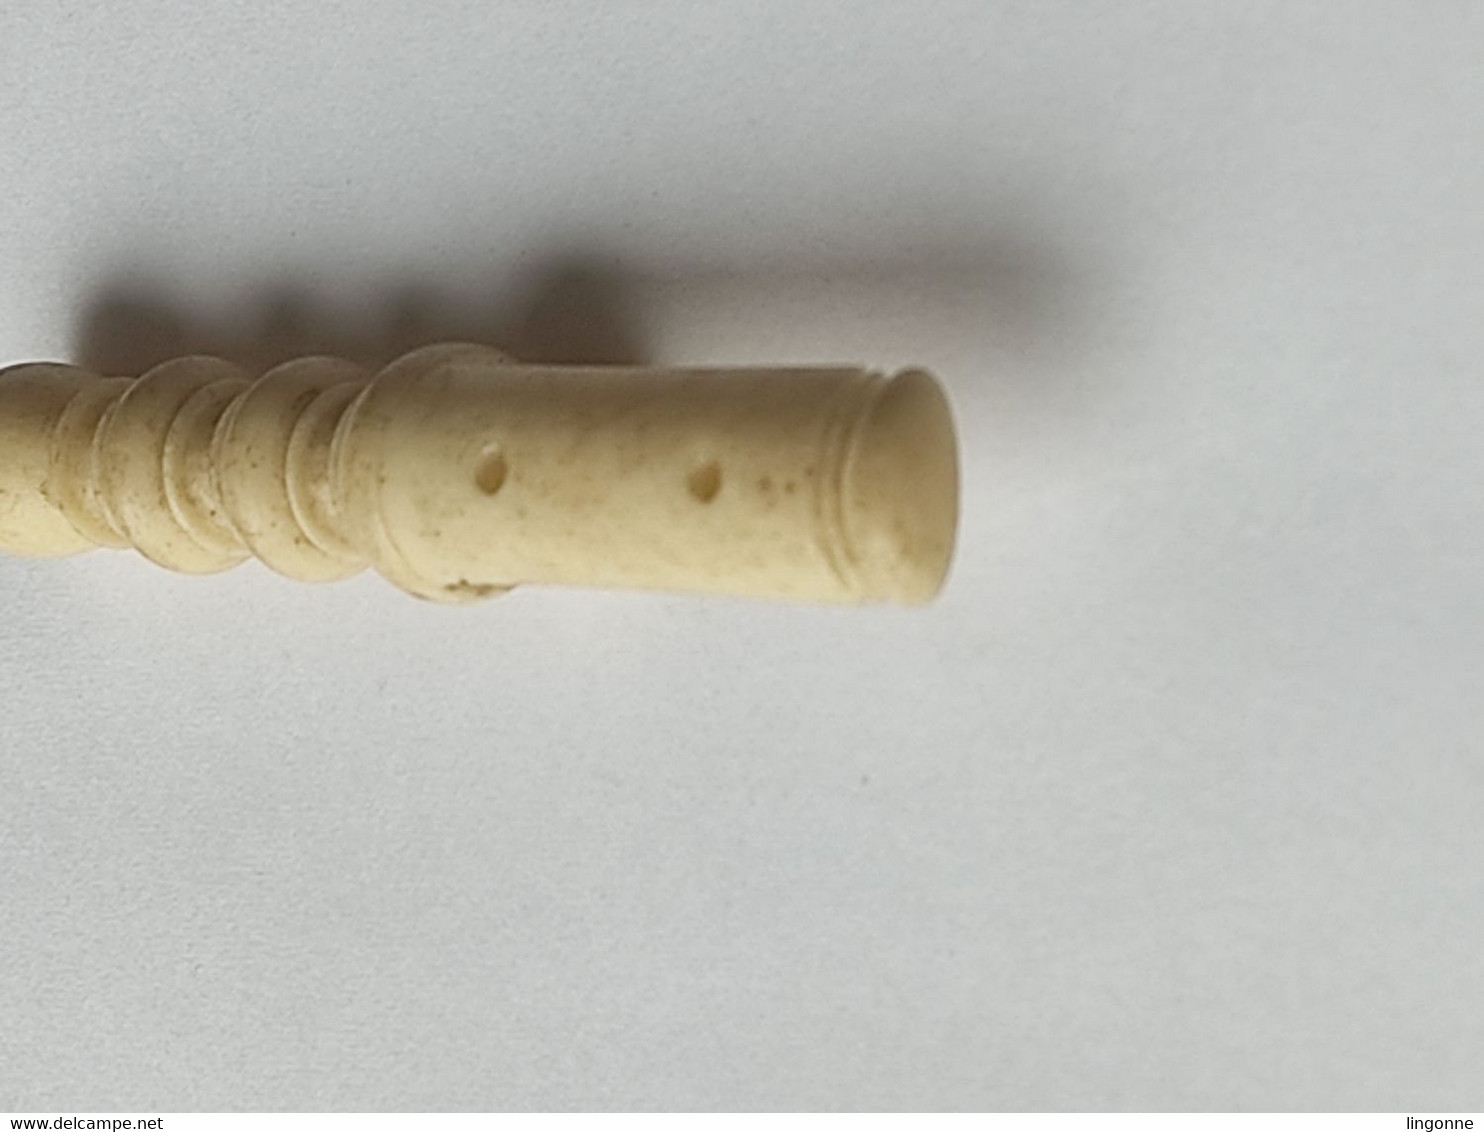 ANCIEN ACCESSOIRE Sculpté En OS, DE CANNE OMBRELLE PARAPLUIE EPOQUE FIN 19ème SIECLE  Long 6,8 Cm Env - Ombrelles, Parapluies